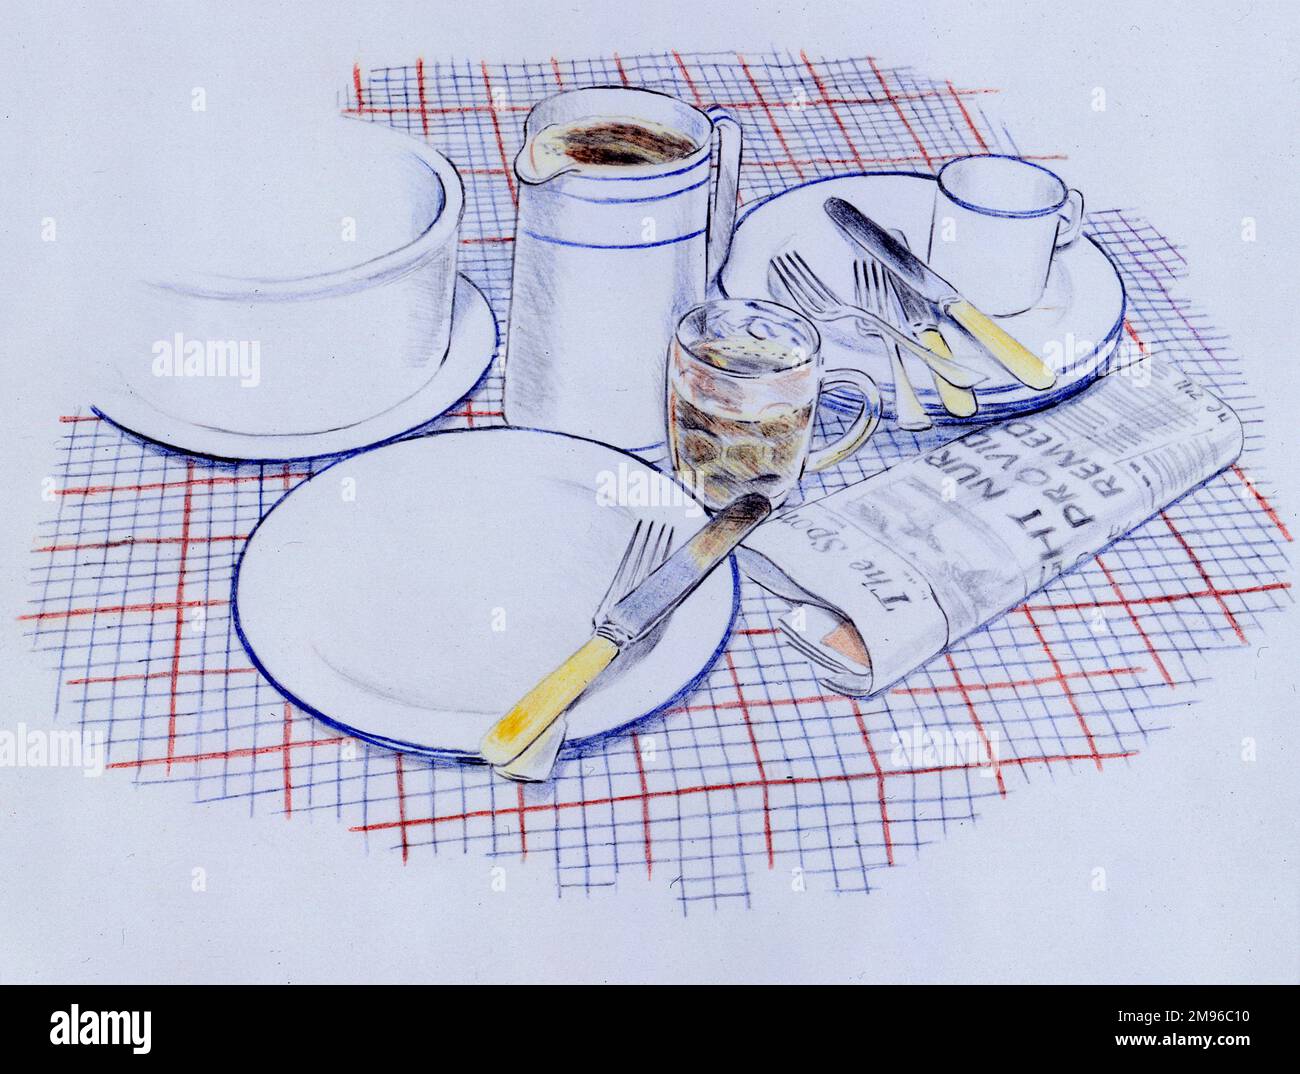 Ein Stillleben auf einem Tisch, mit Geschirr, Besteck, einem Bierglas und einer gefalteten Zeitung. Stockfoto